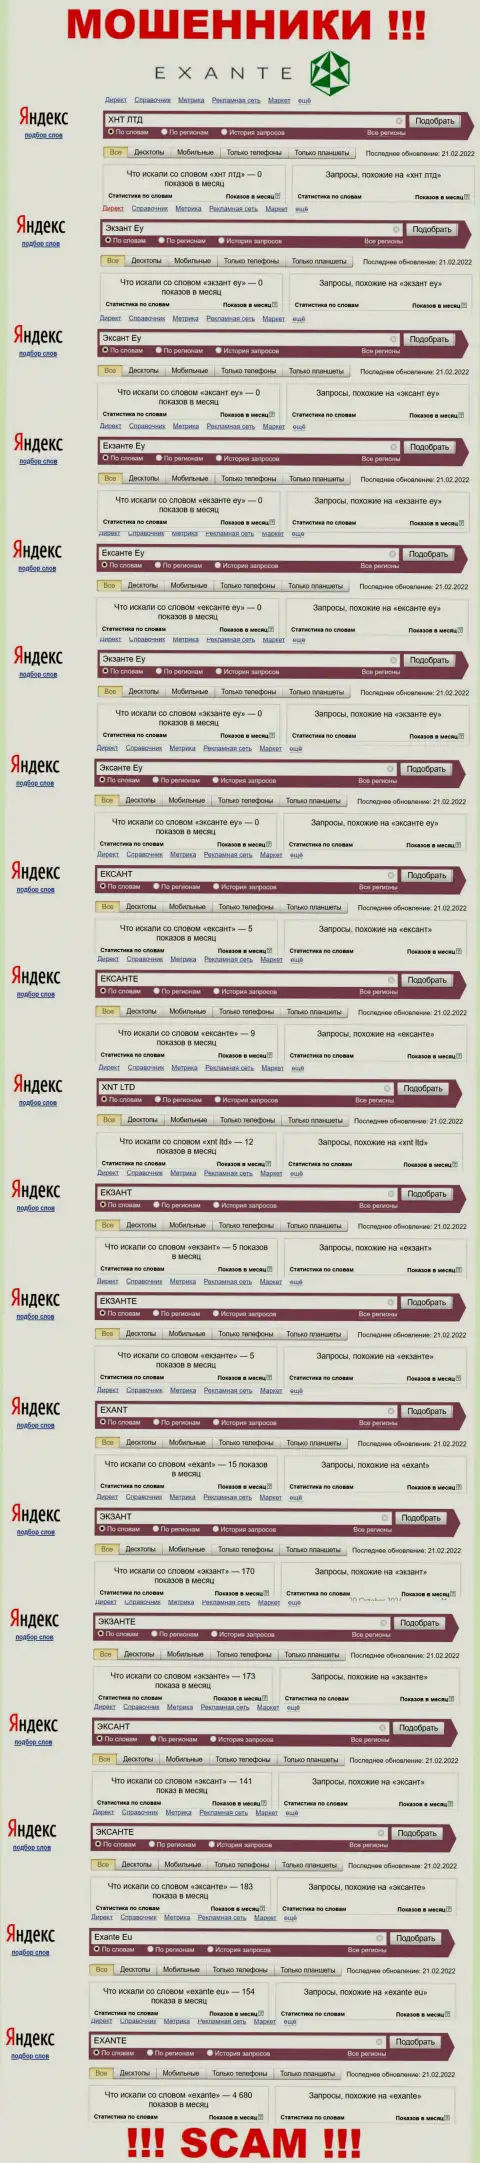 Количество online-запросов в поисковиках глобальной сети internet по бренду обманщиков Экзант Еу